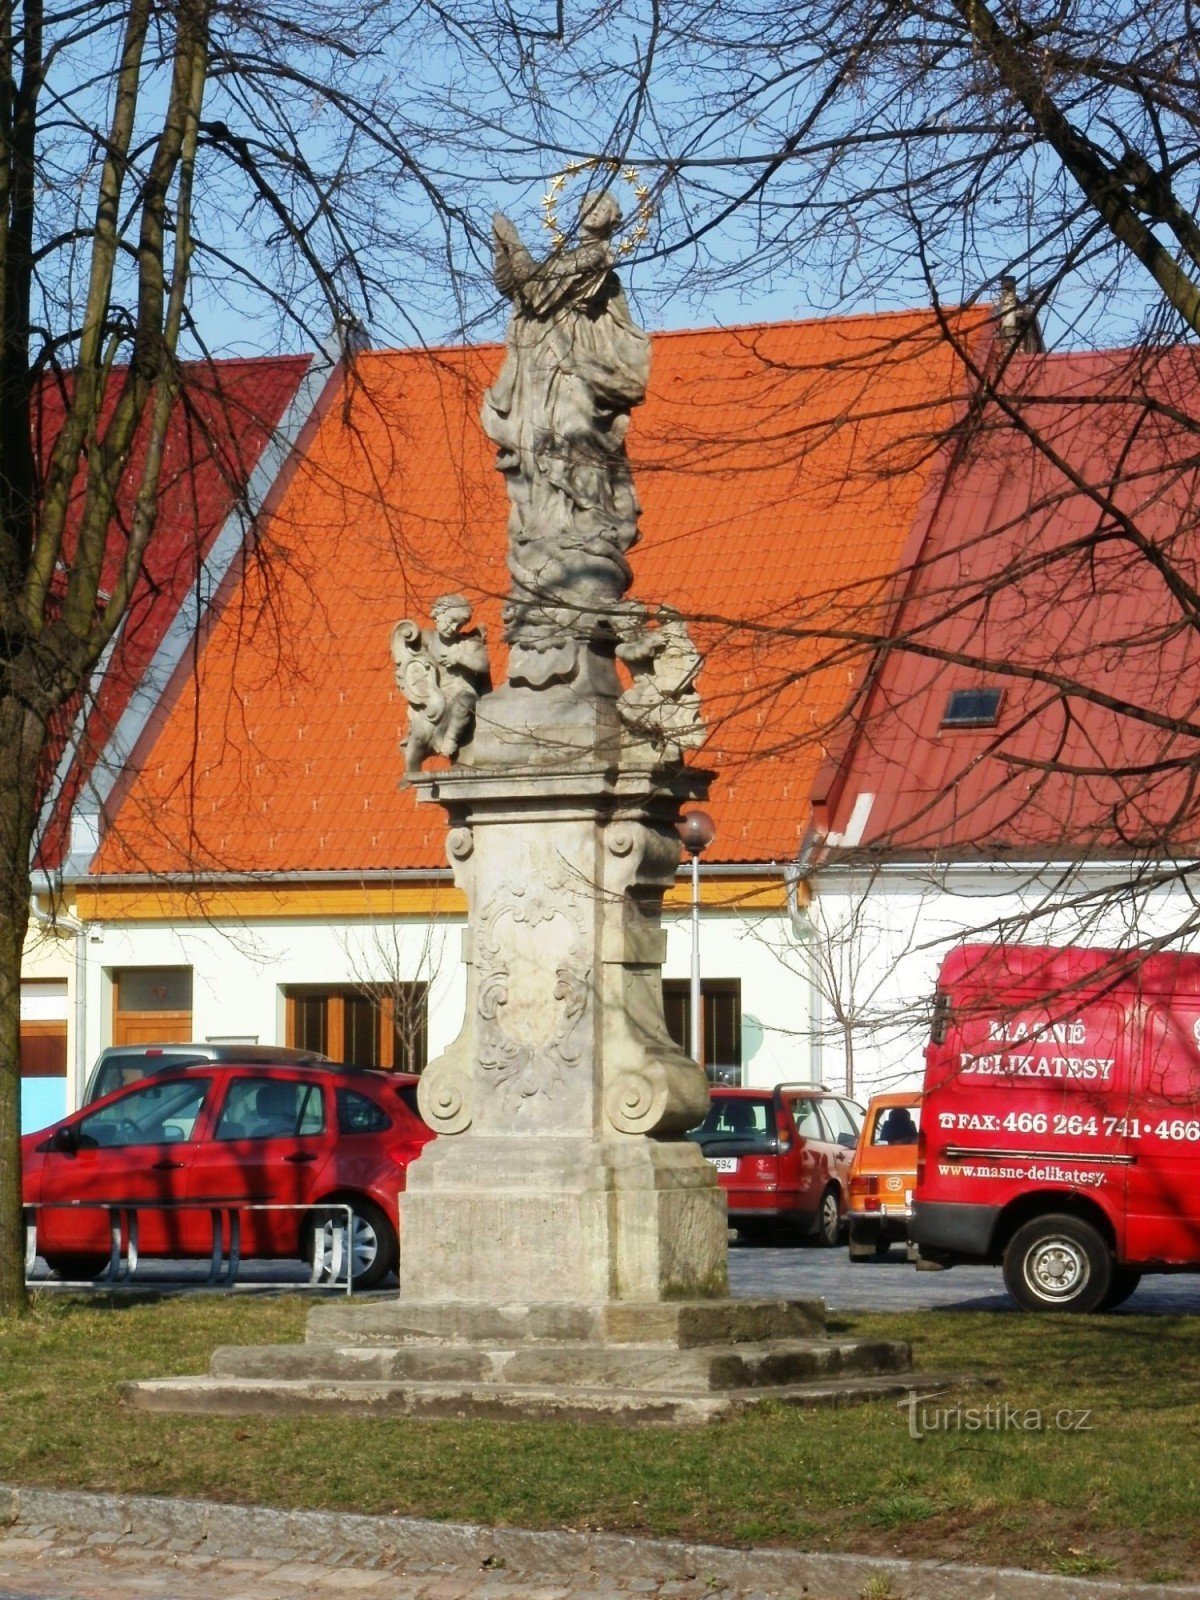 Borohrádek - statue of the Virgin Mary